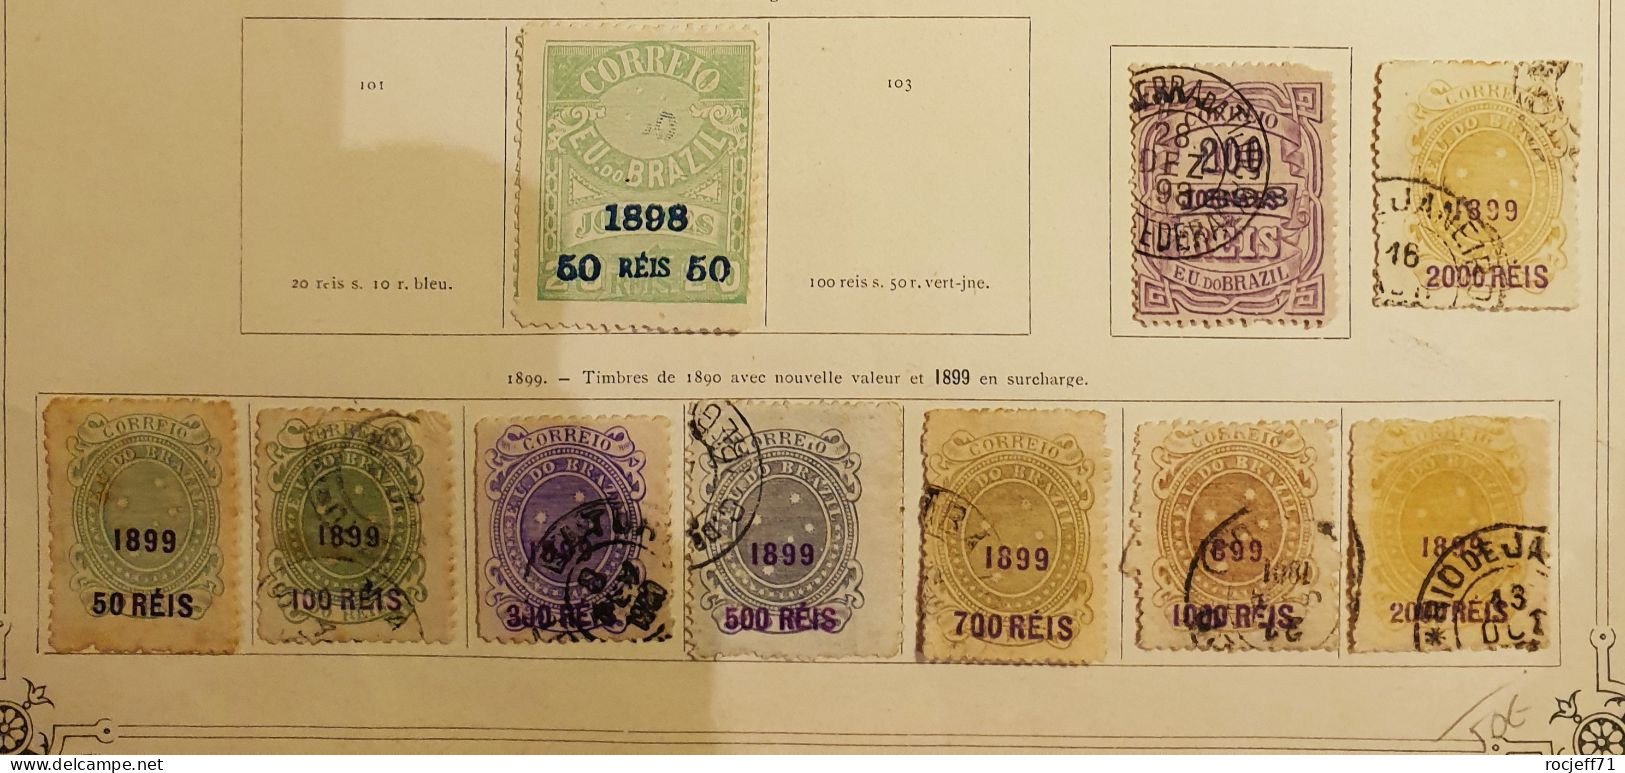 11 - 23 // Bresil - Belle collection de 1843 à 1899 - Cote : 2500 euros //   15 scans